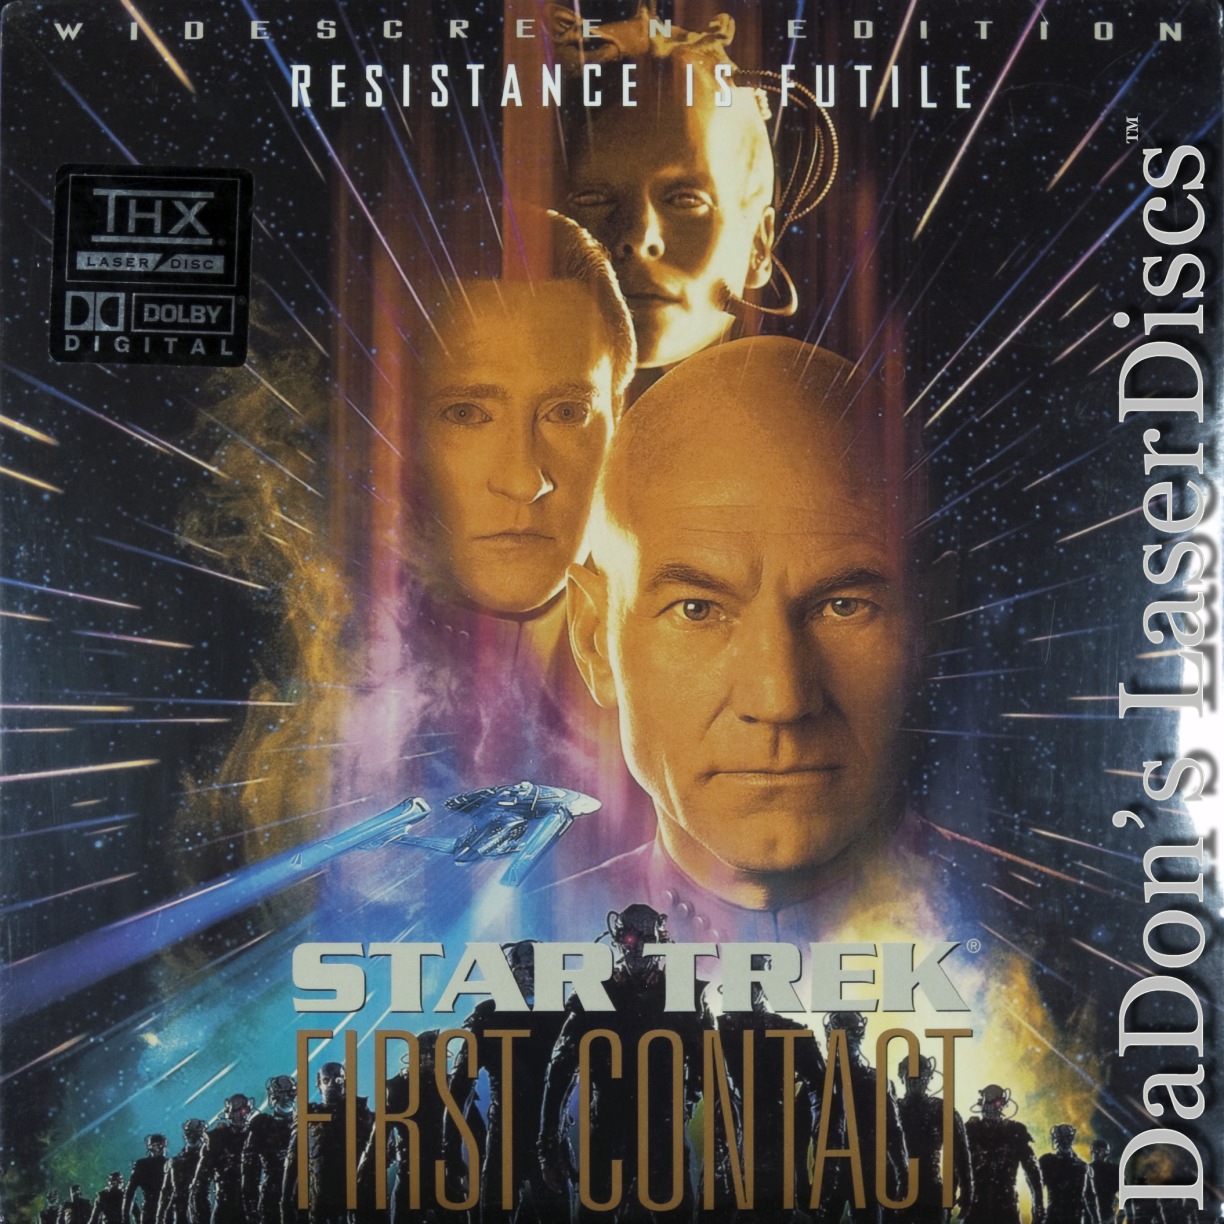 star trek first contact laserdisc